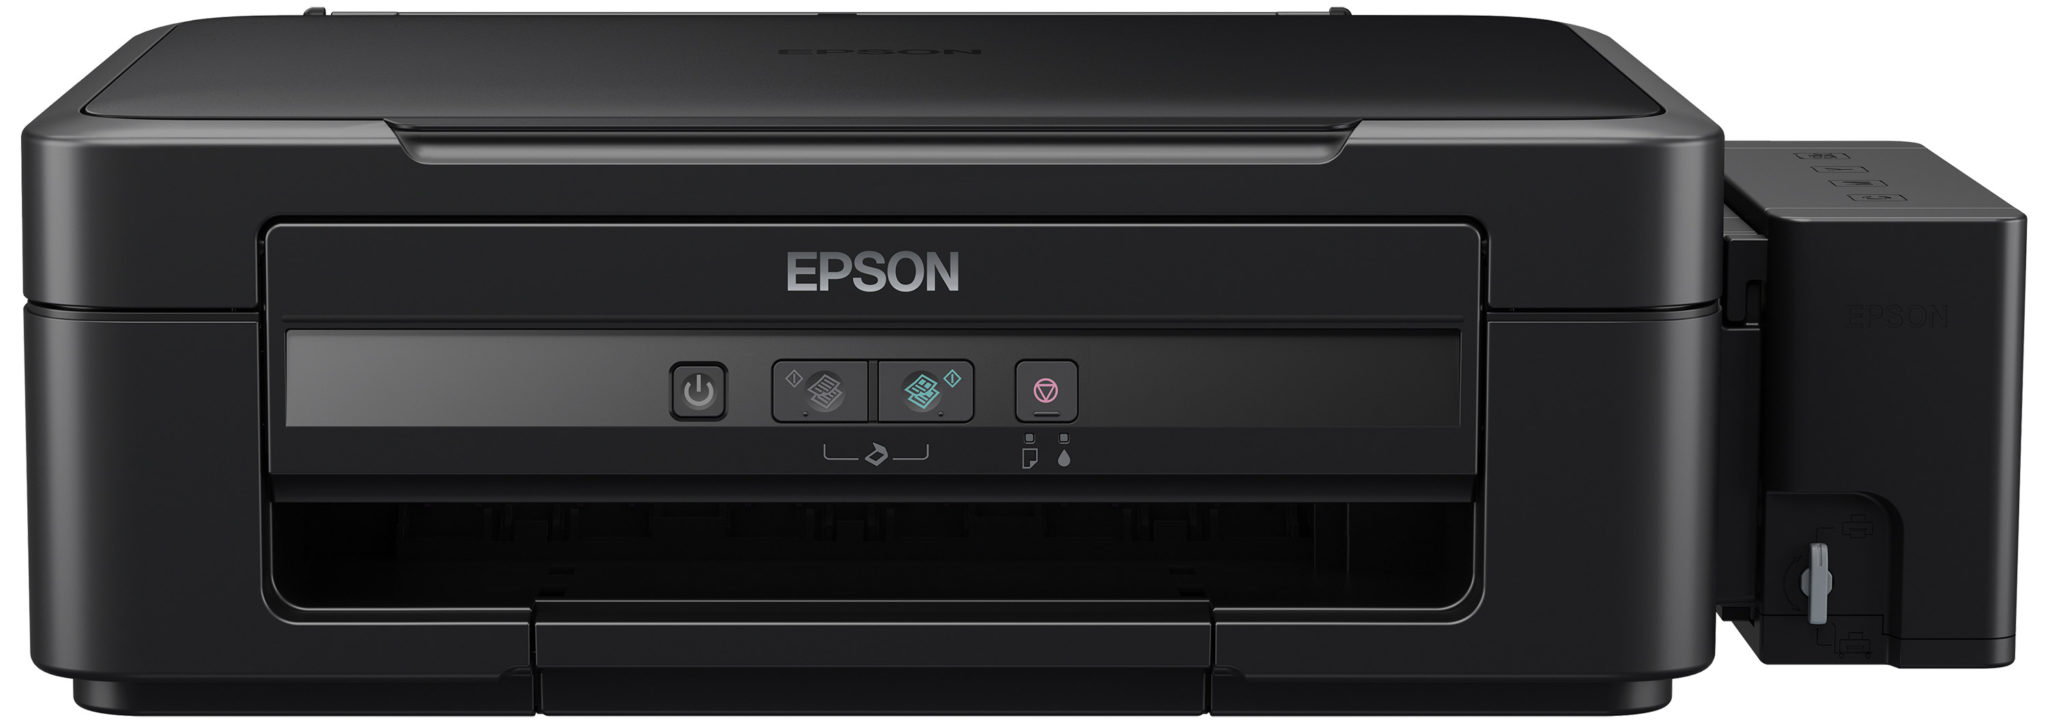 Обновление модельного ряда «Фабрика печати Epson»